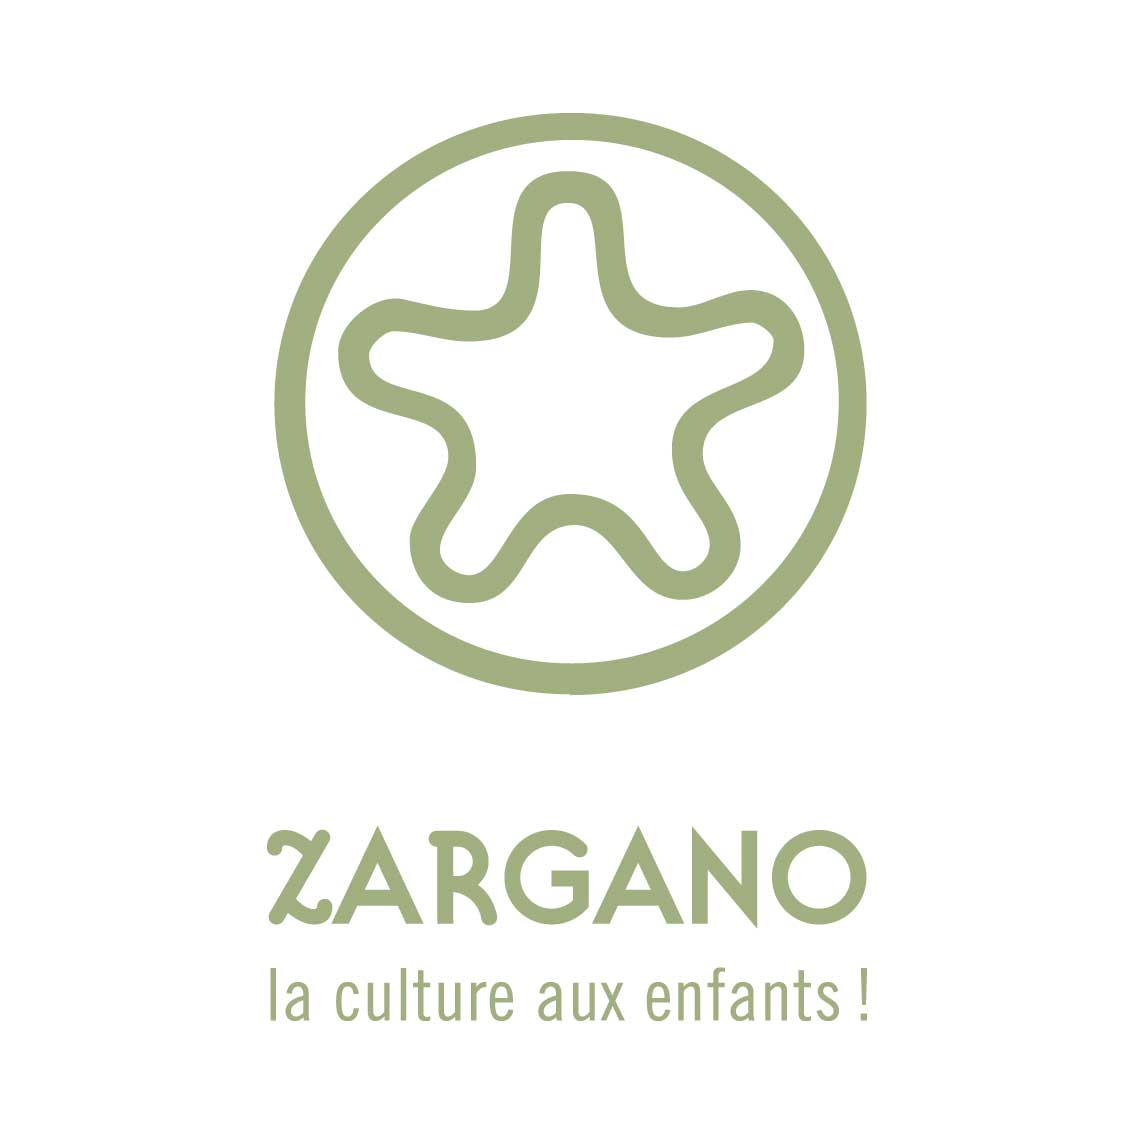 Zargano